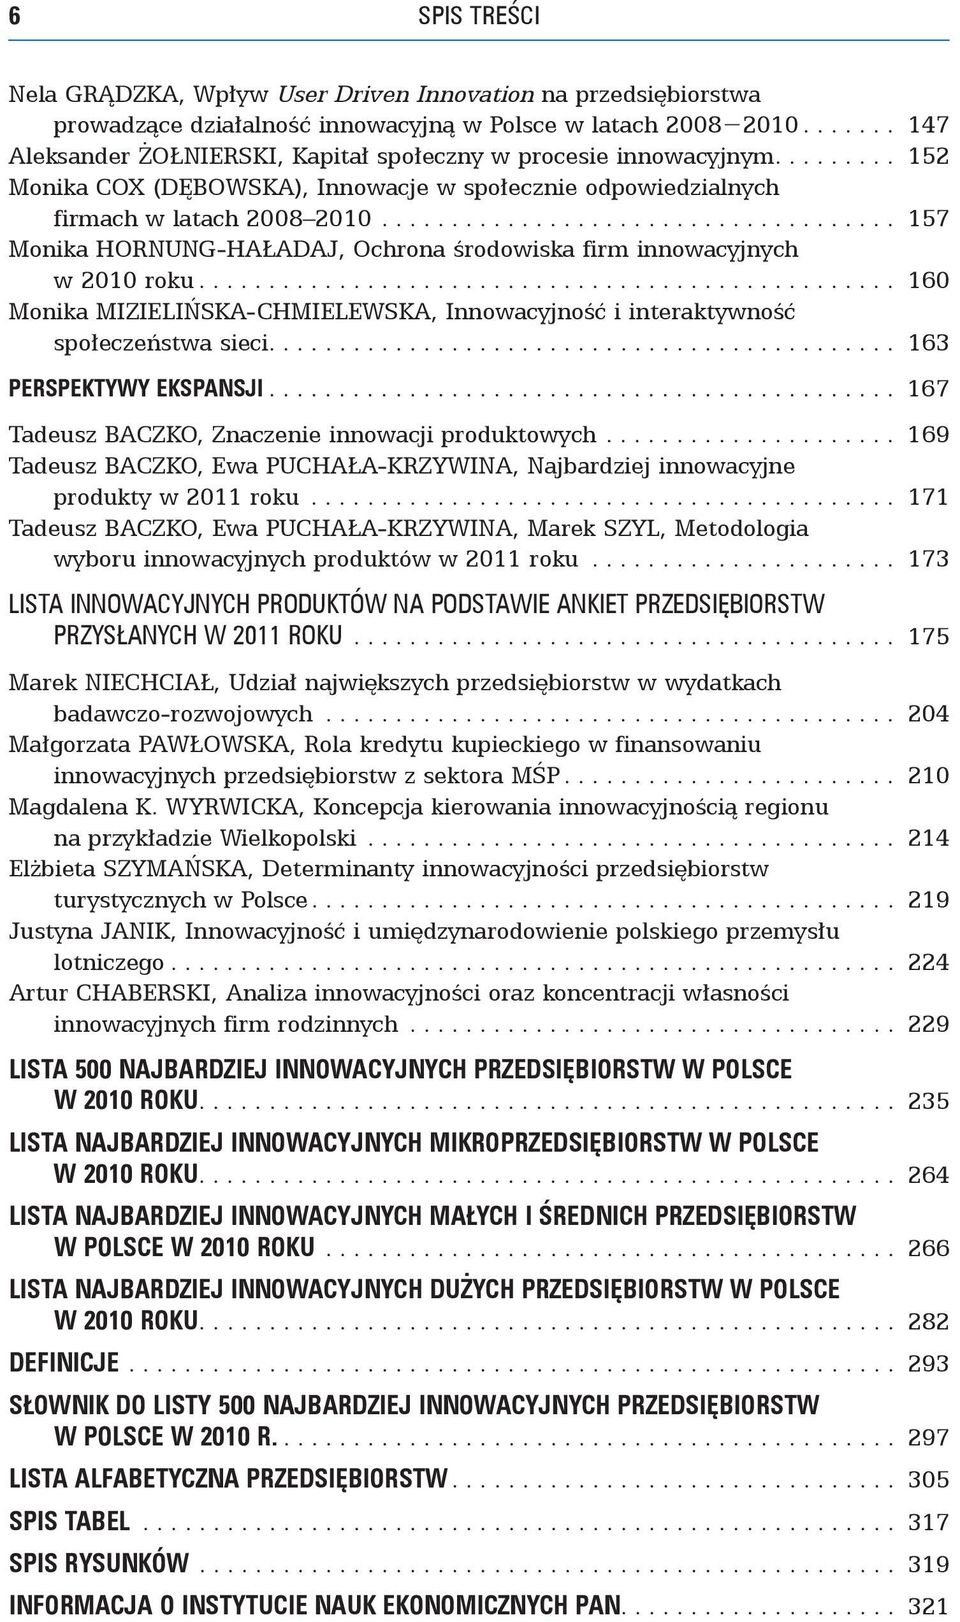 .. 157 Monika Hornung-Haładaj, Ochrona środowiska firm innowacyjnych w 2010 roku... 160 Monika Mizielińska-Chmielewska, Innowacyjność i interaktywność społeczeństwa sieci.... 163 PERSPEKTYWY EKSPANSJI.